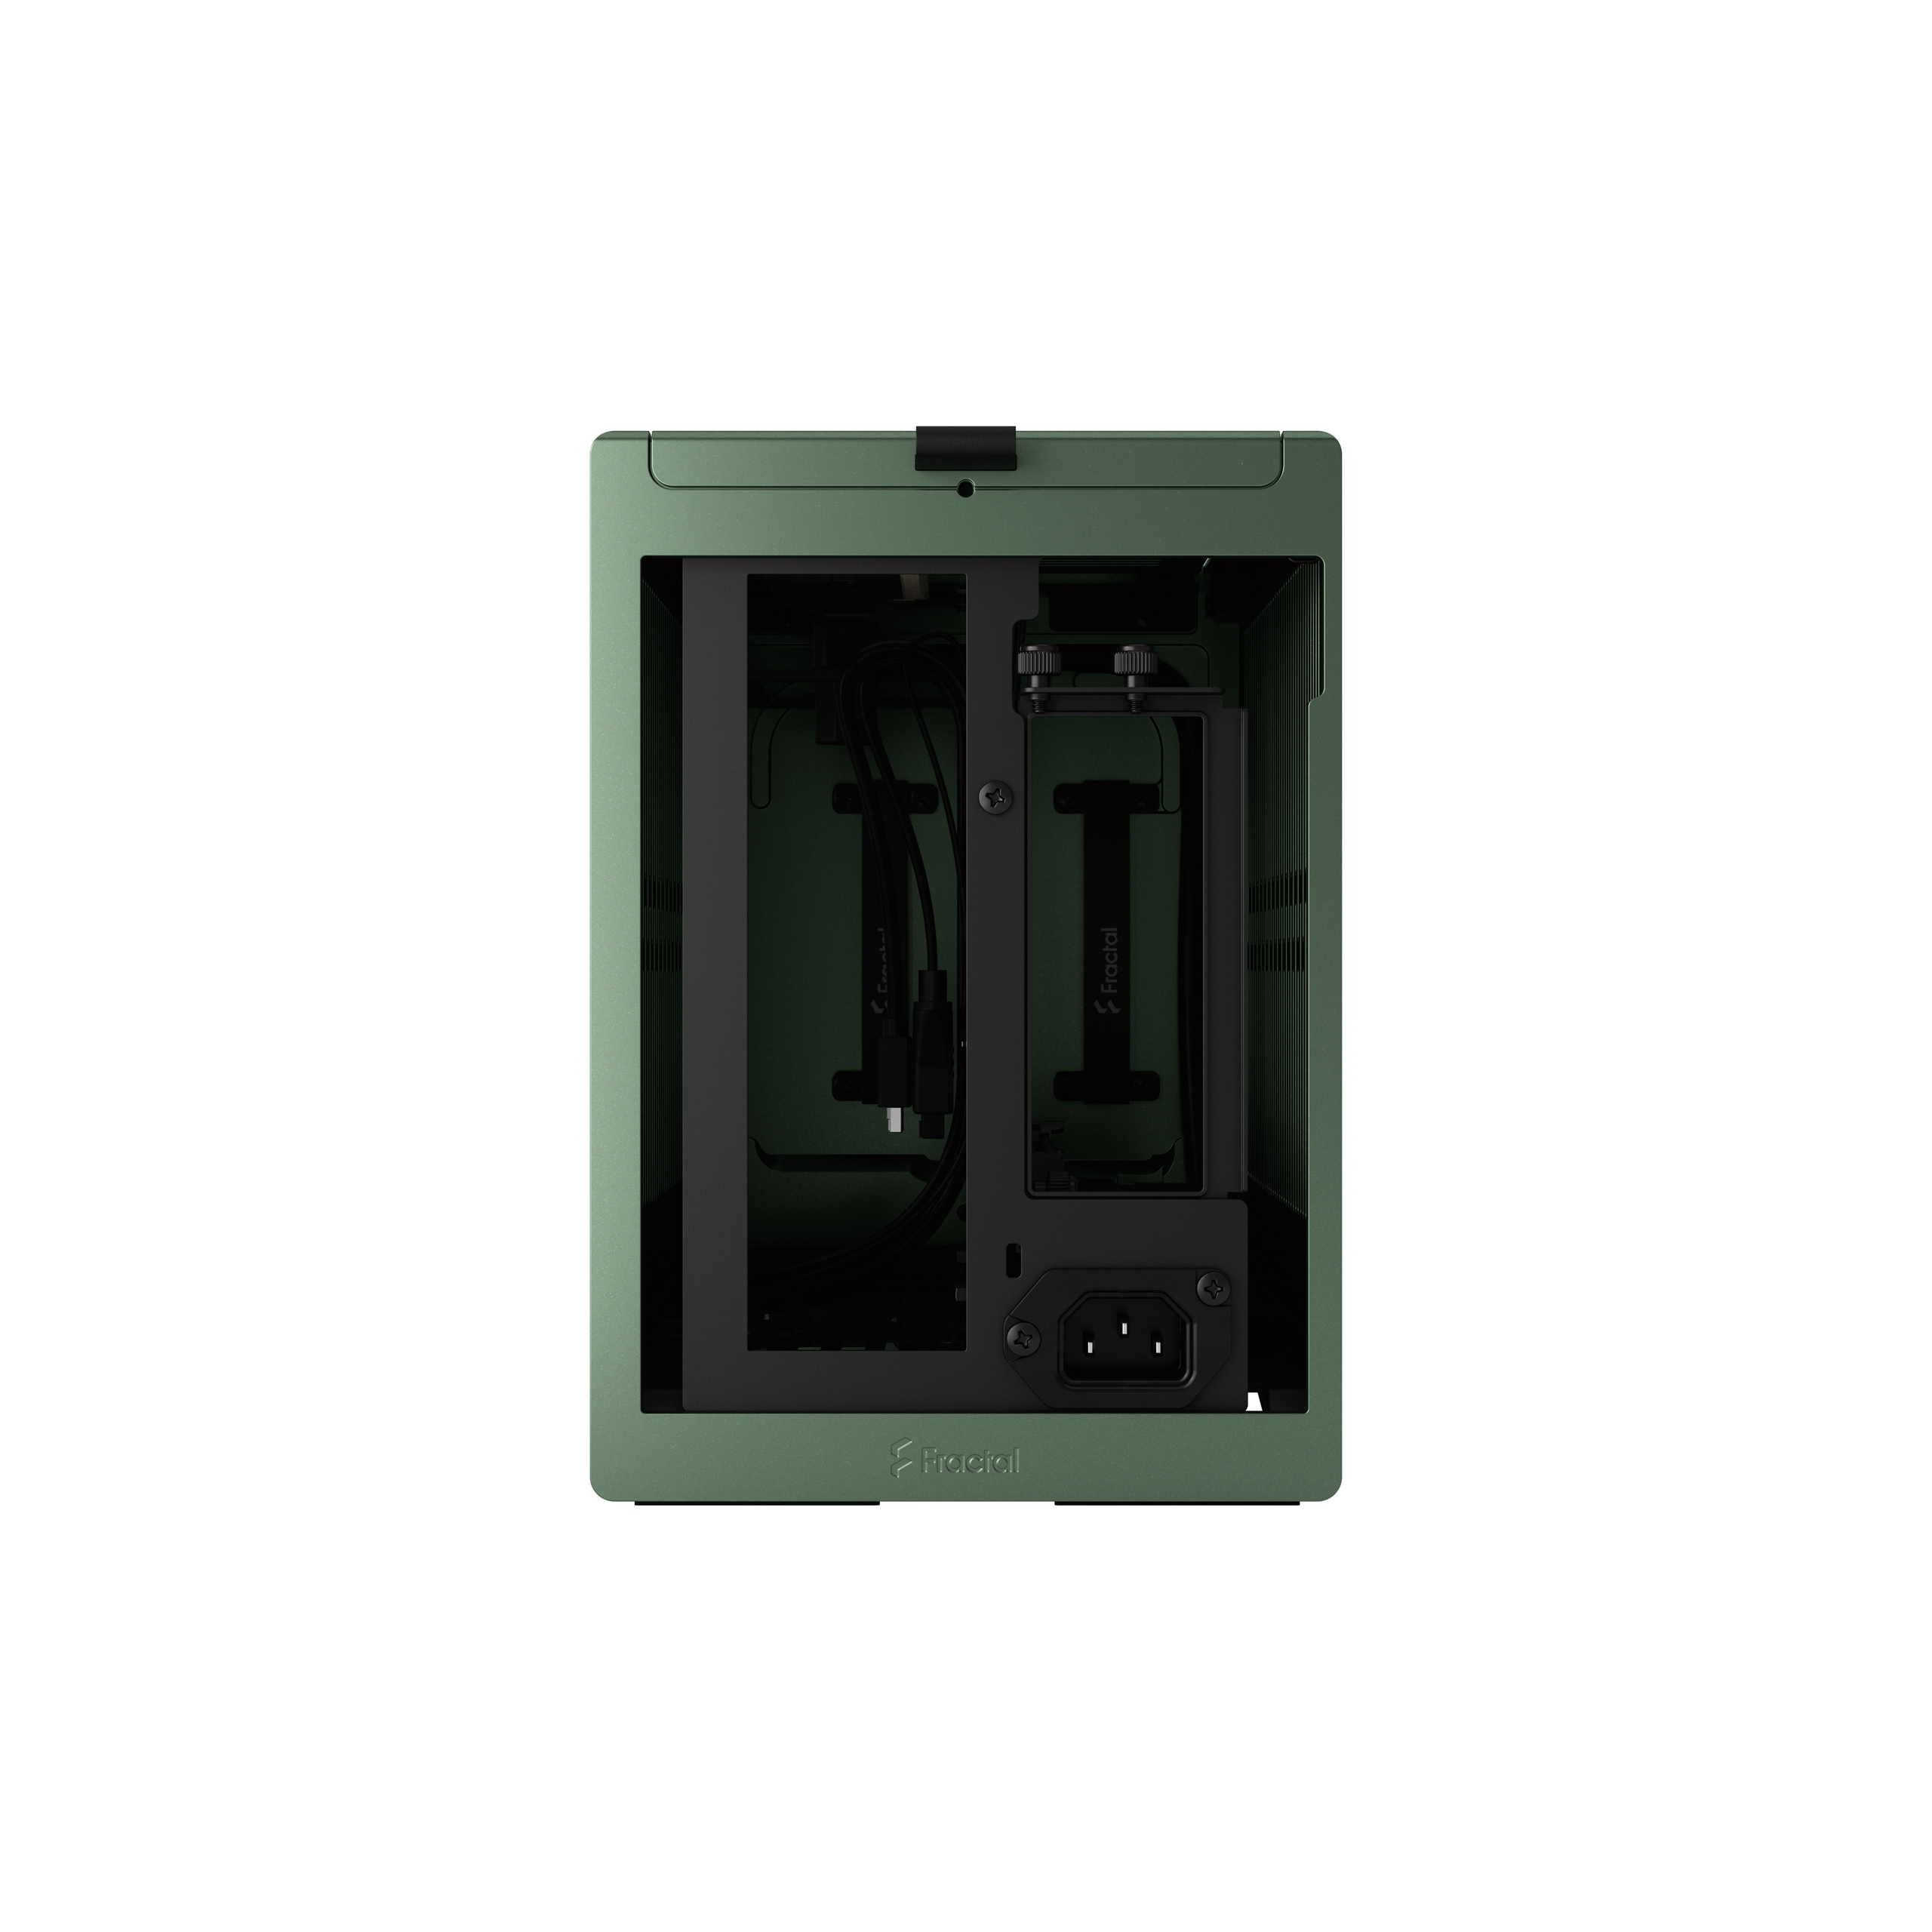 Fractal Design - Caixa Mini-ITX Fractal Design Terra Jade